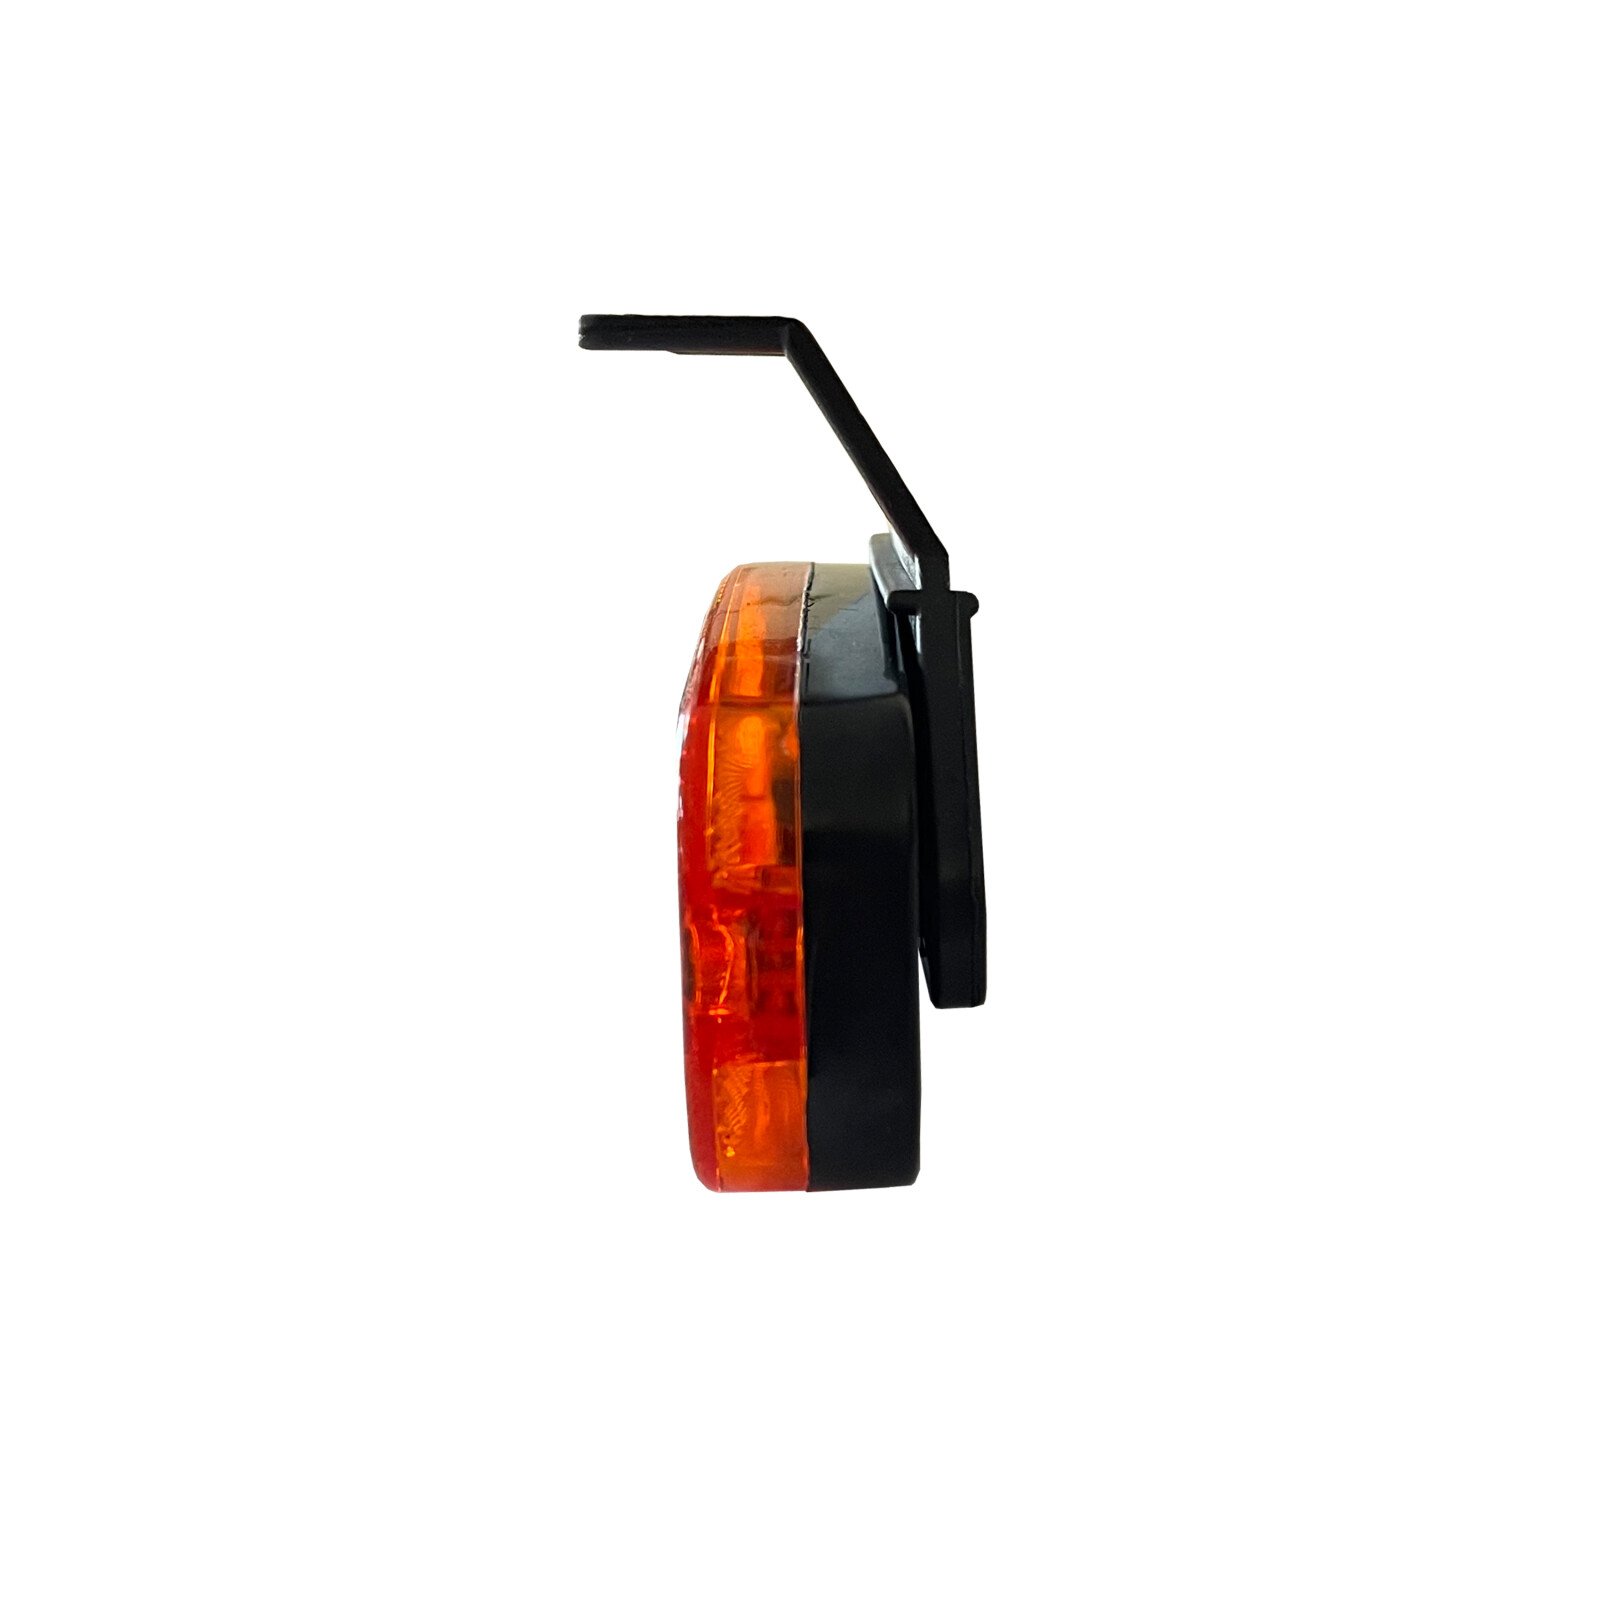 Reflektoros helyzetjelző lámpa 3 LED-es, levehető tartó, univerzális rögzítés, 12/24V - Sárga thumb